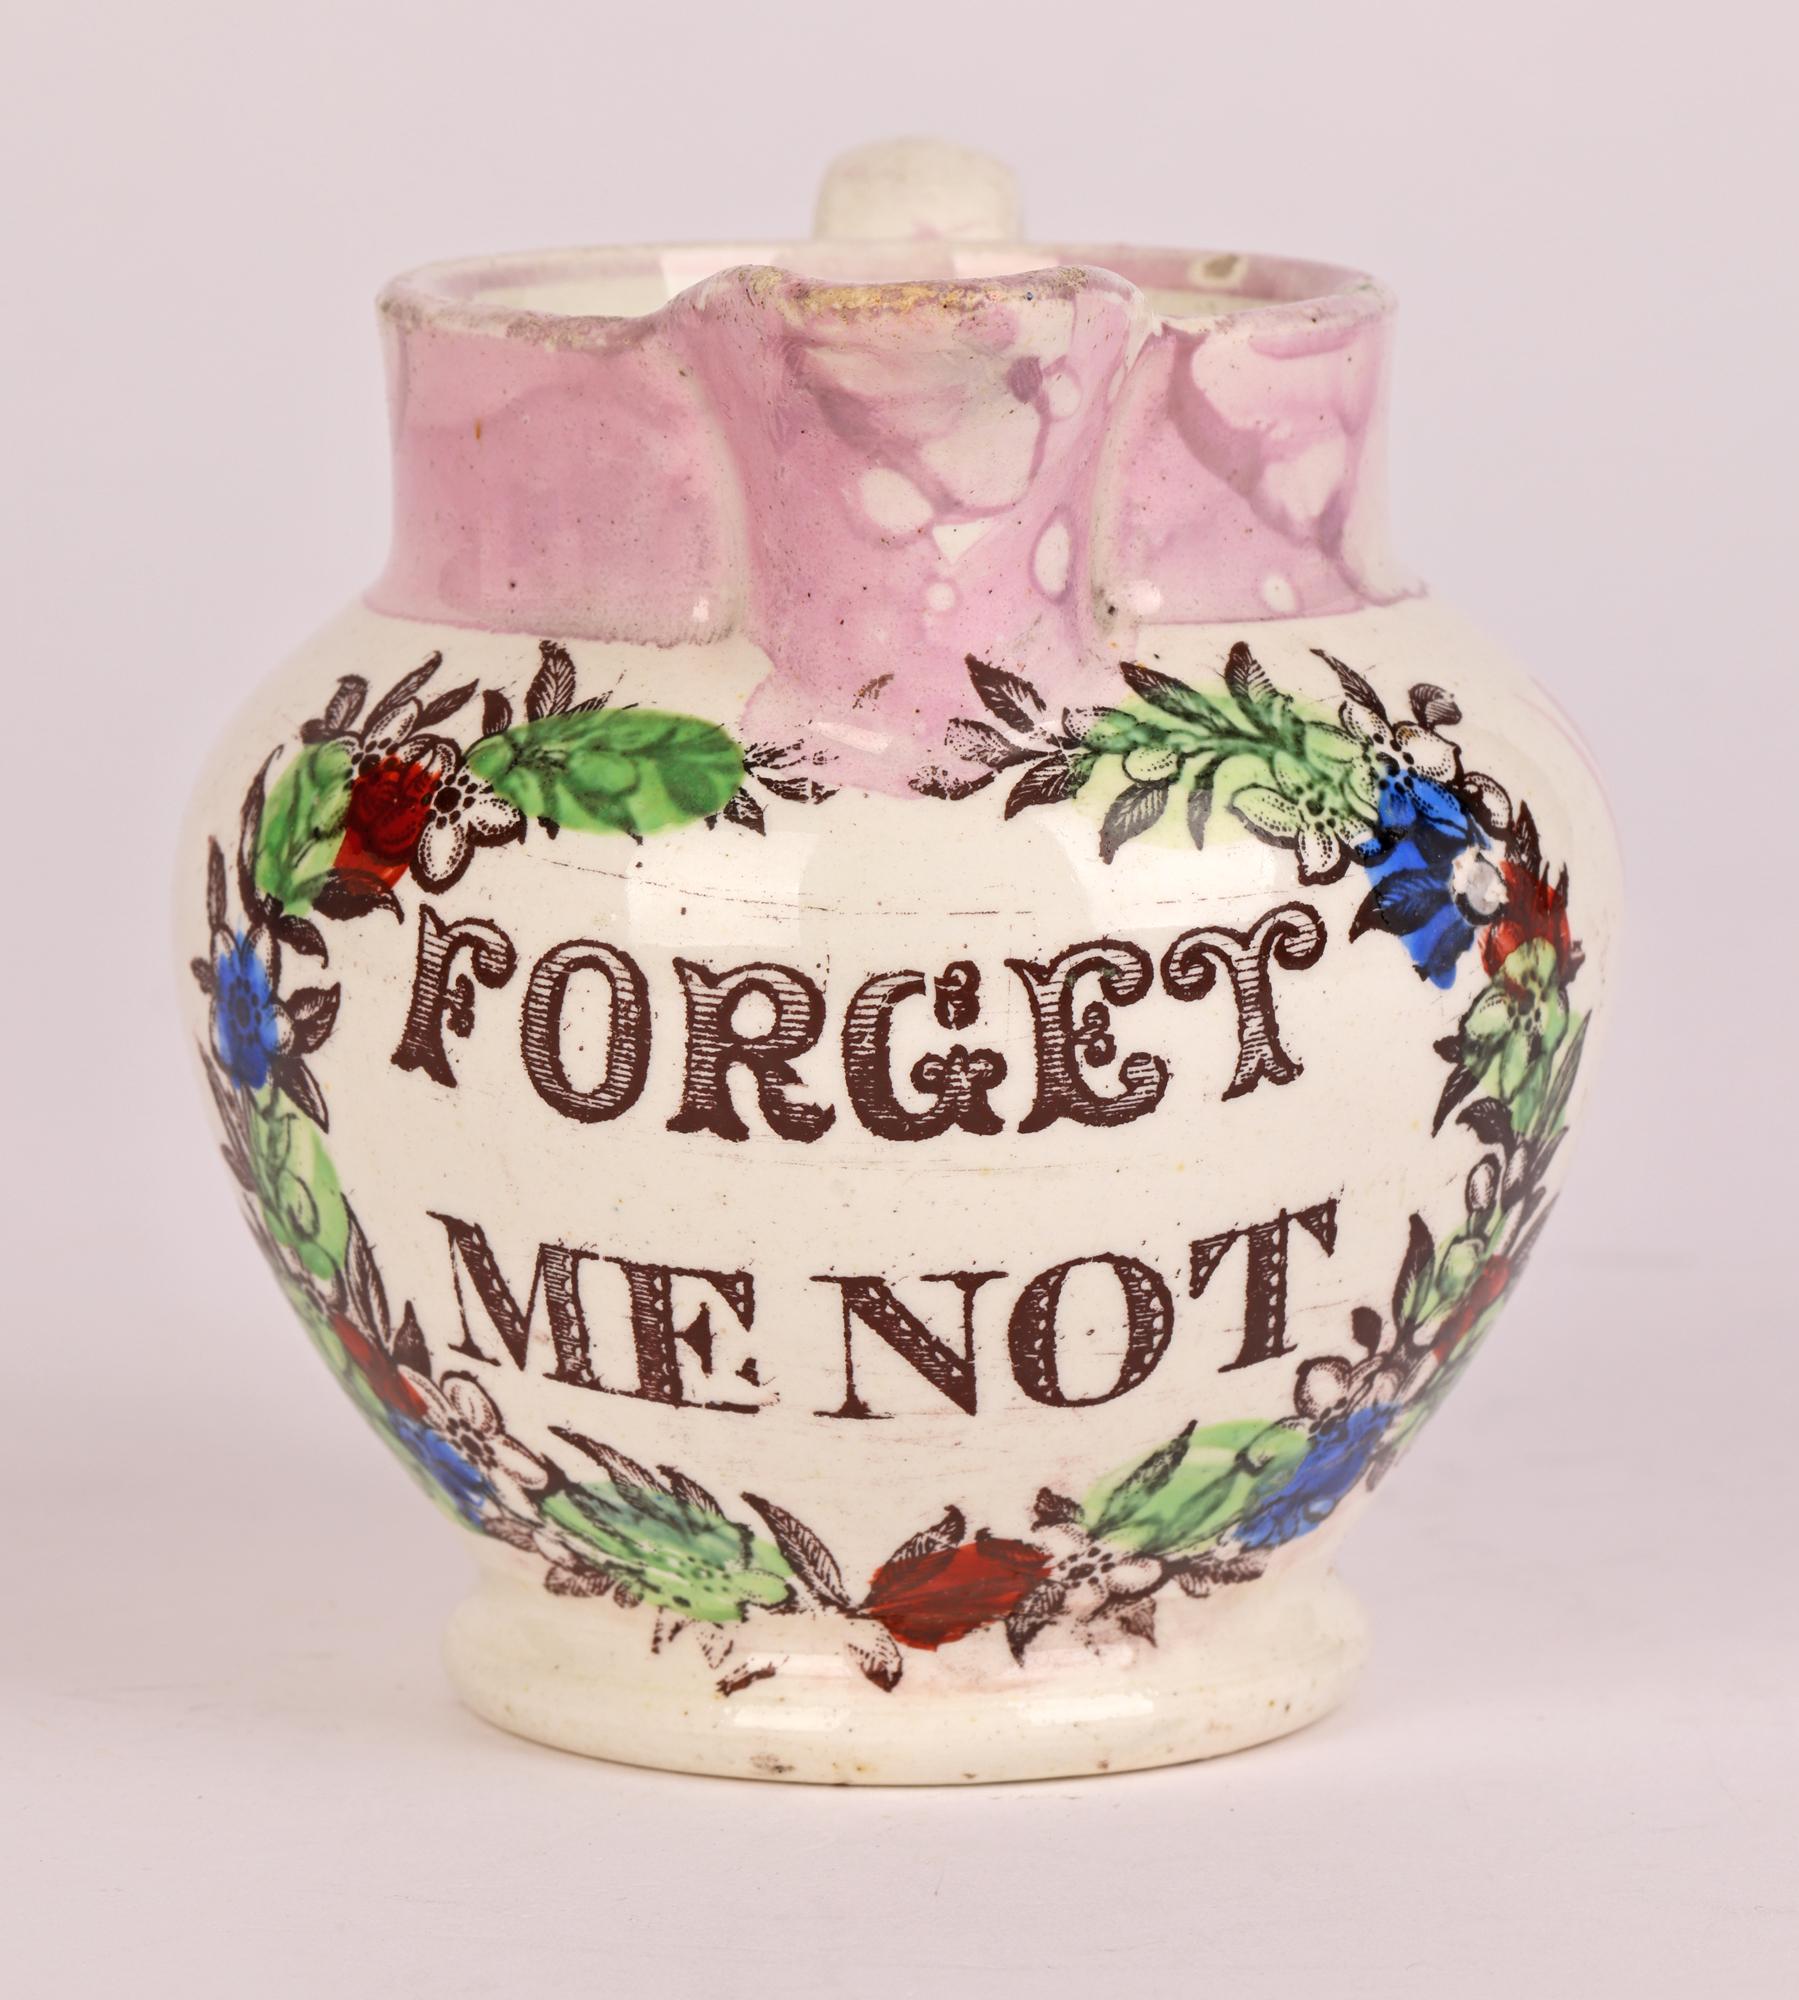 Eine seltene antike englische, möglicherweise Yorkshire oder Sunderland Lüster Perlware Keramik Creme Krug mit den Worten FORGET ME NOT aus etwa 1820-30 verziert. Der kleine, leicht getöpferte Krug hat eine abgerundete, bauchige Form und steht auf